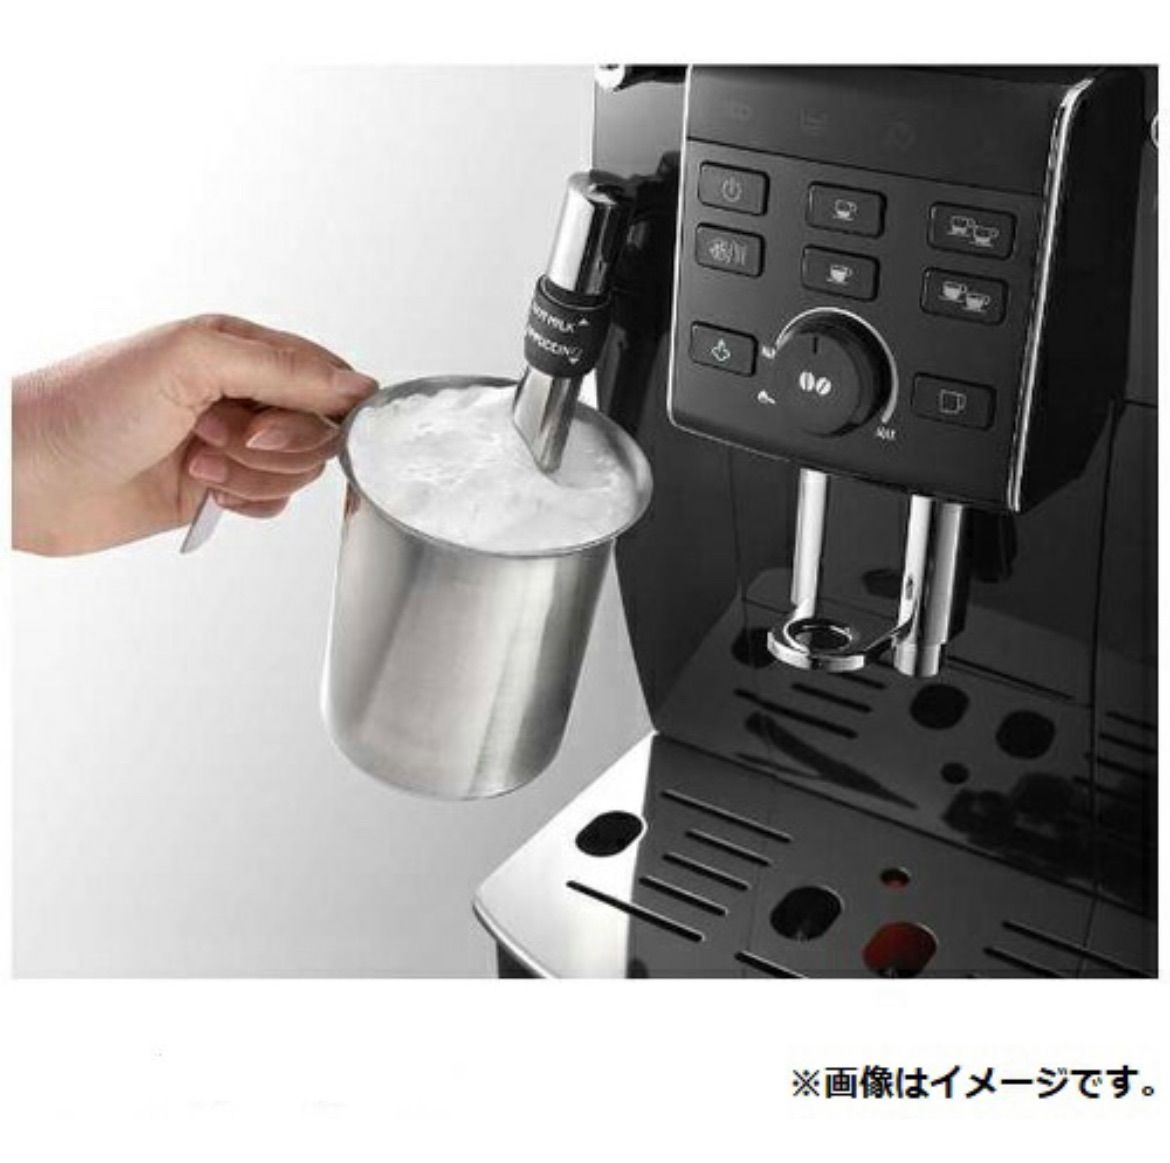 発売モデル ✨大特価✨ドリップ コーヒーメーカー 自動ドリップ式 350ml大容量